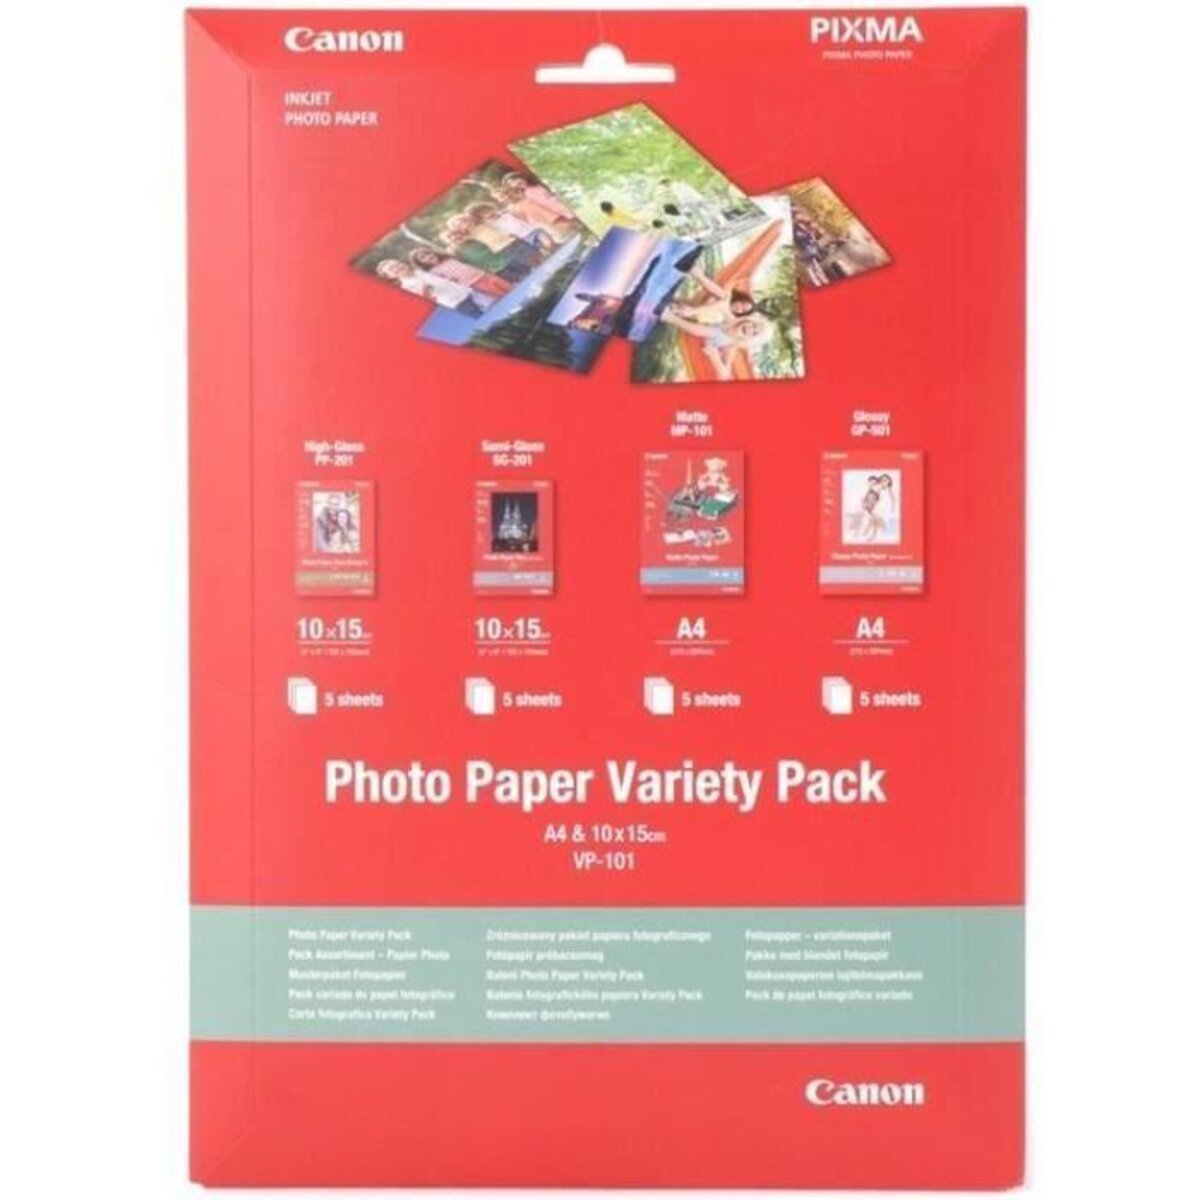 Papier vp-101 photo/pack assortiment a4 10x15cm 4x5 f. Canon - La